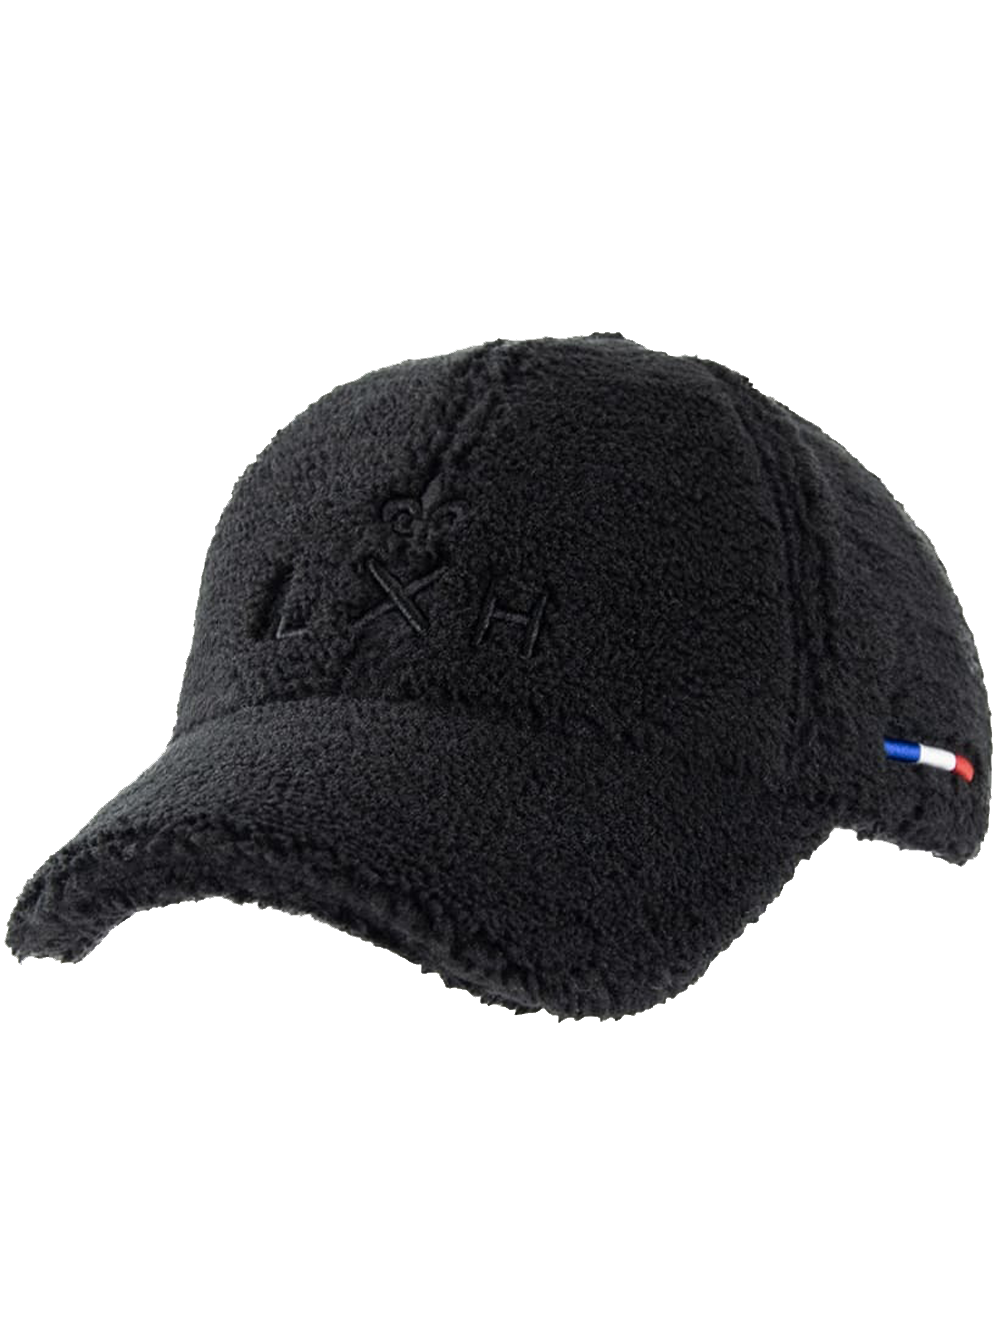 Fleece cap